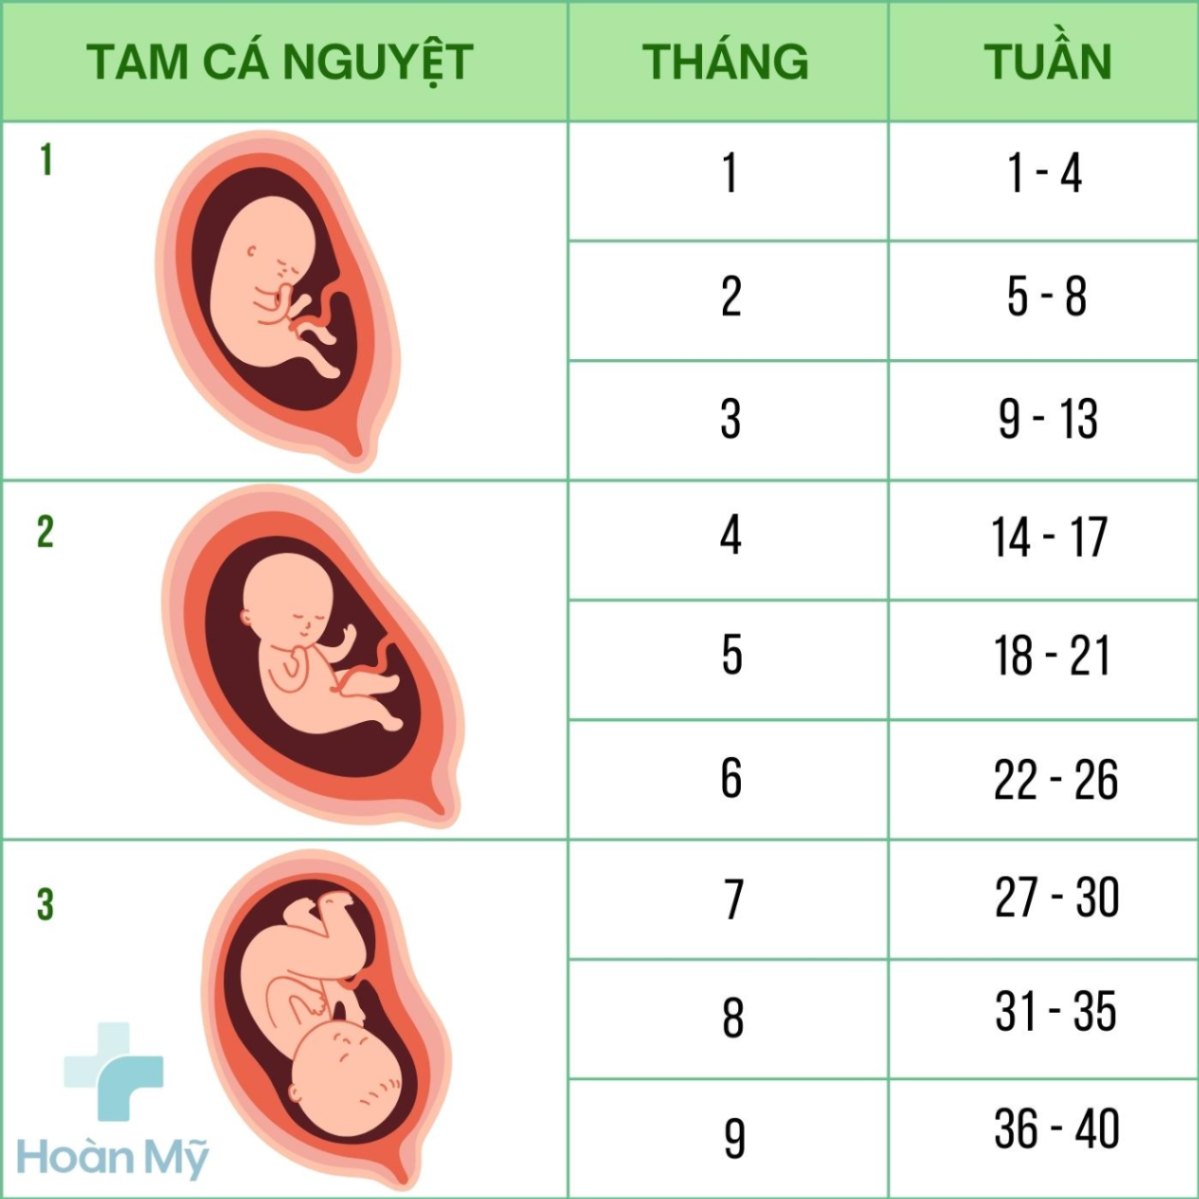 Thai bao nhiêu tuần thì có tim thai? - Giải đáp thắc mắc cho mẹ bầu